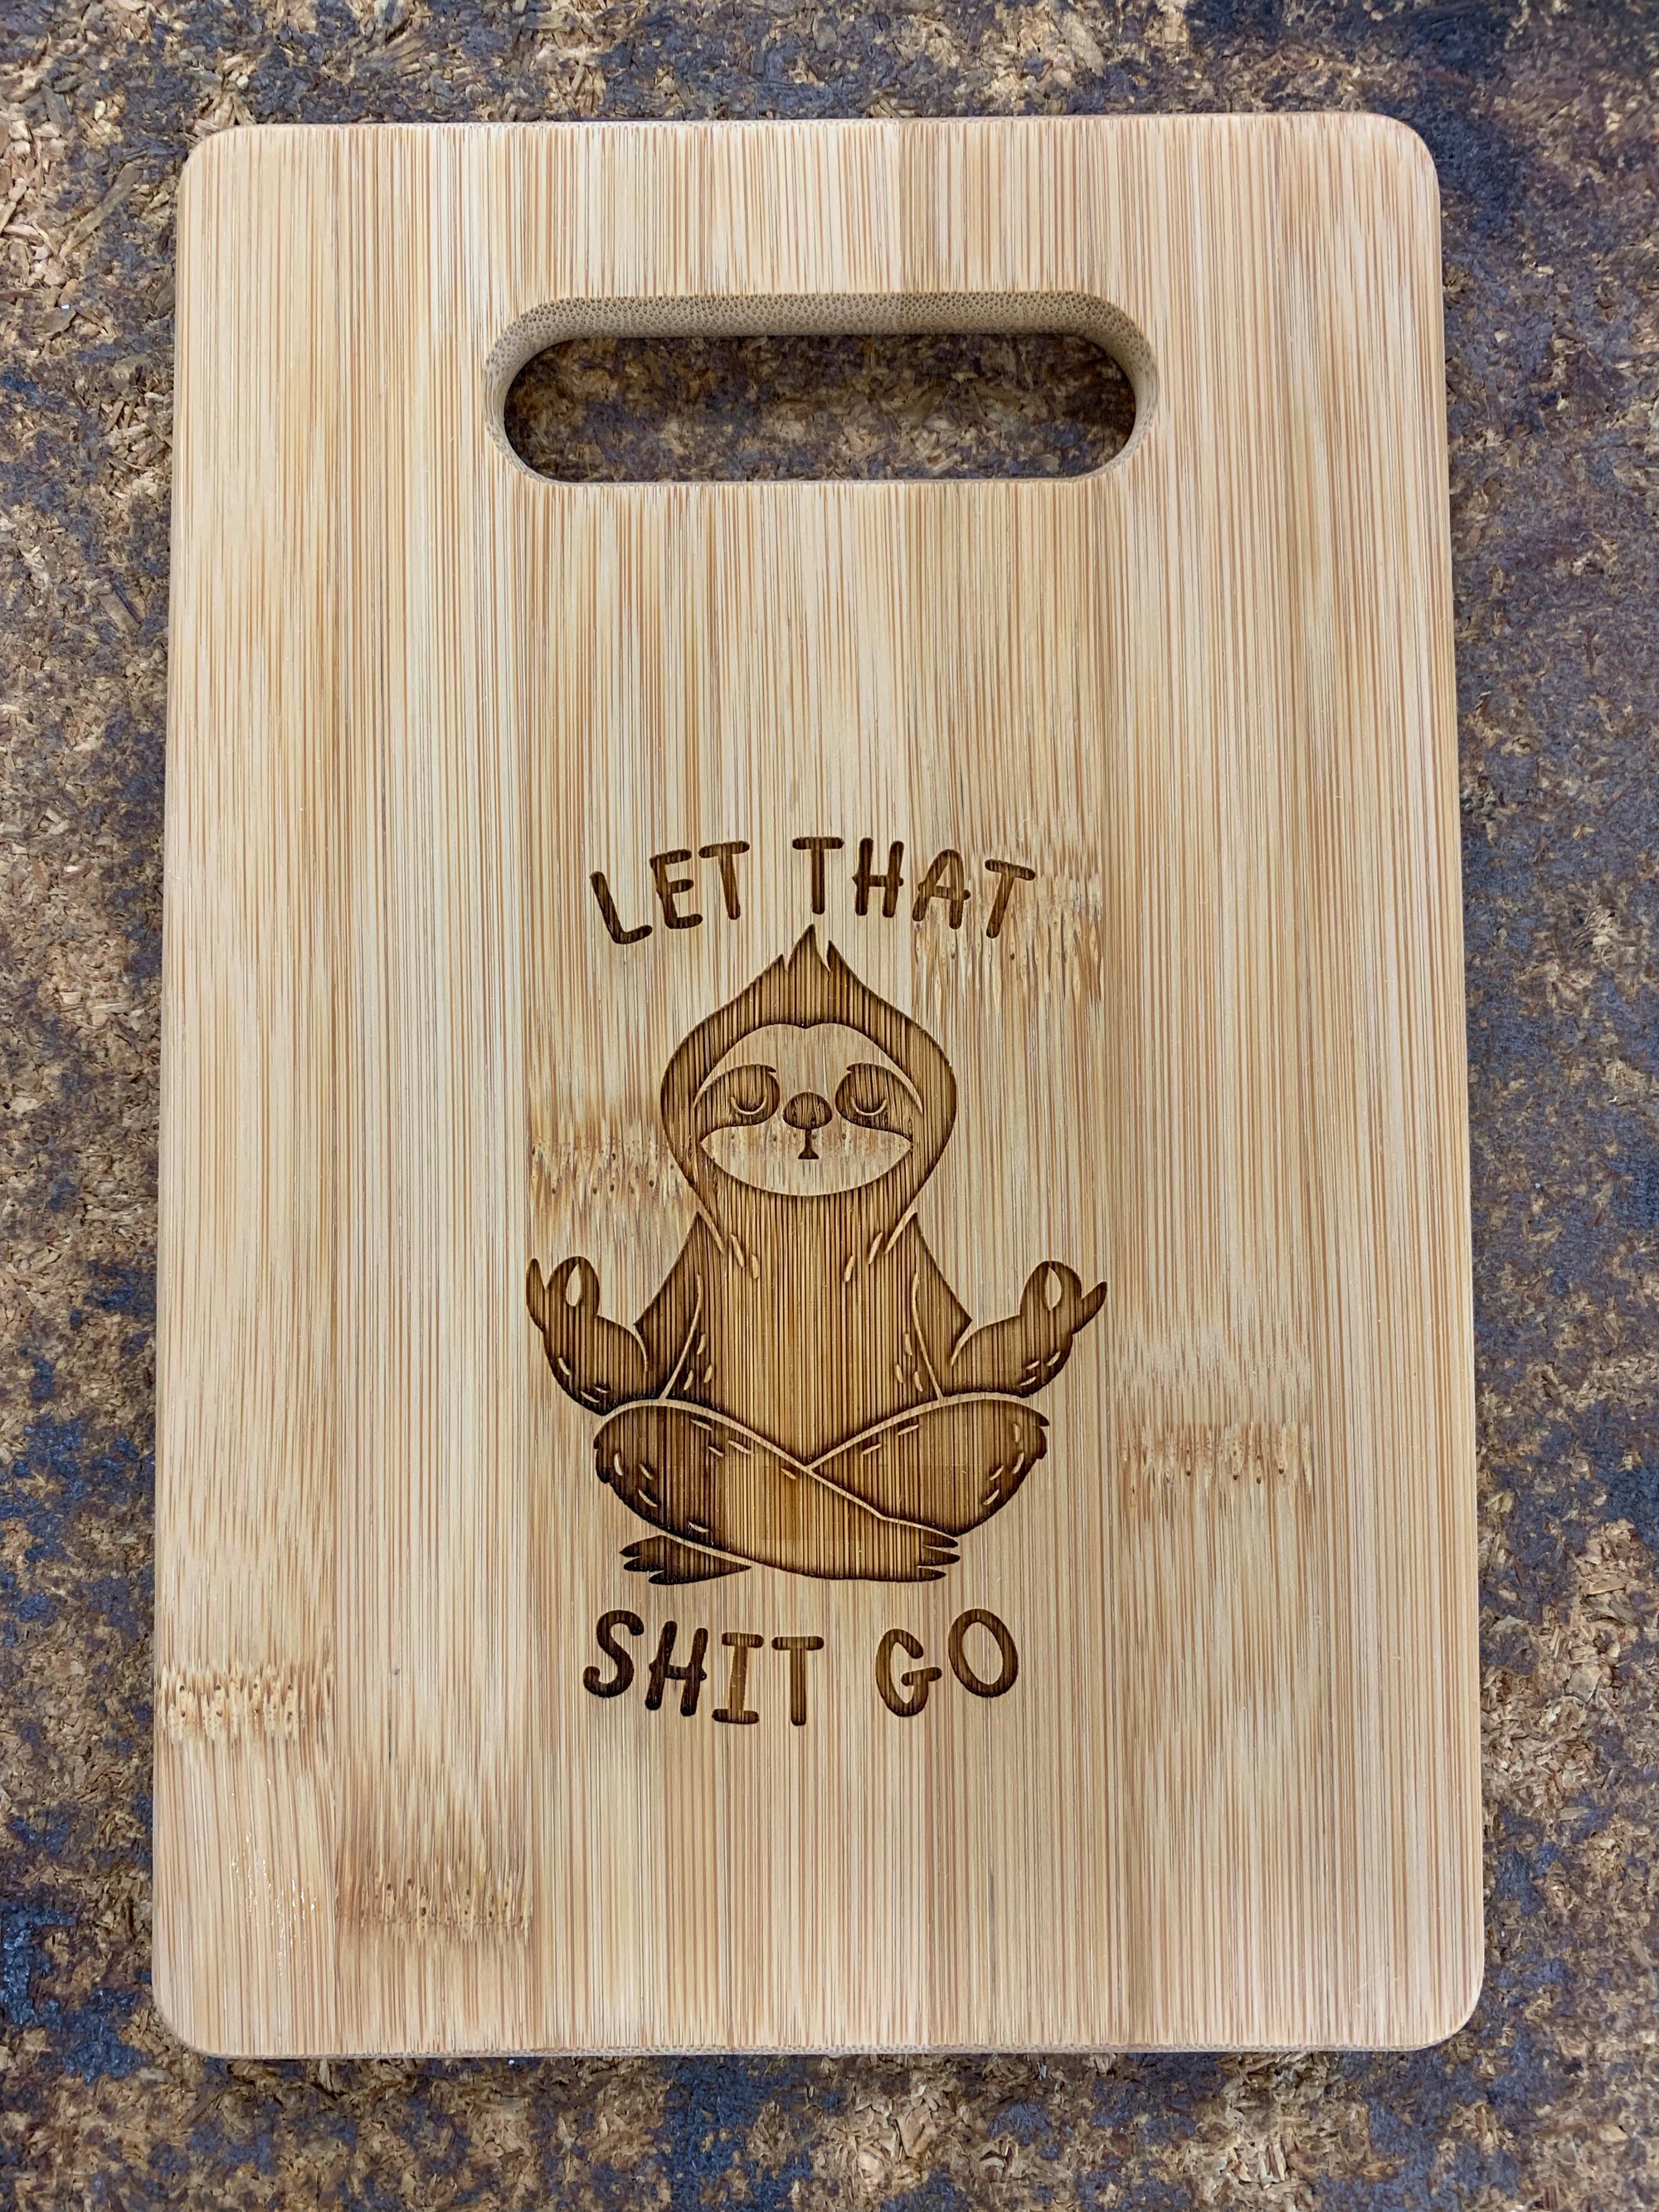 9" x 6" Bamboo Bar Cutting Board - Let That Shit Go - ImpressMeGifts